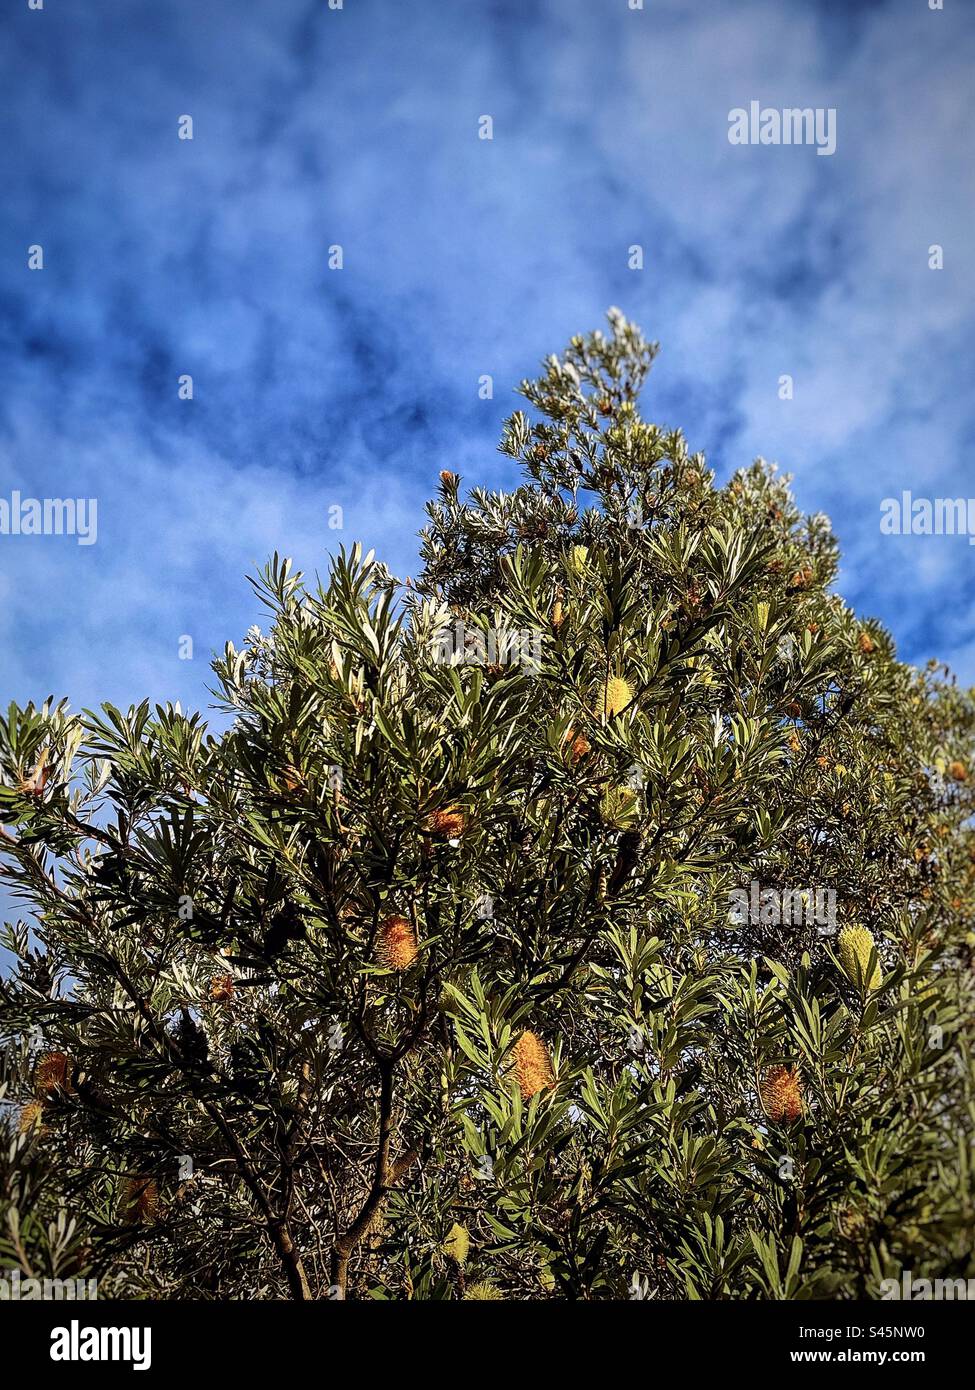 Vue à angle bas de Banksia integrifolia ou de l'arbre de banksia de la côte avec des fleurs jaunes sur une journée ensoleillée d'hiver contre un ciel bleu nuageux. Flore de brousse indigène australienne. Banque D'Images